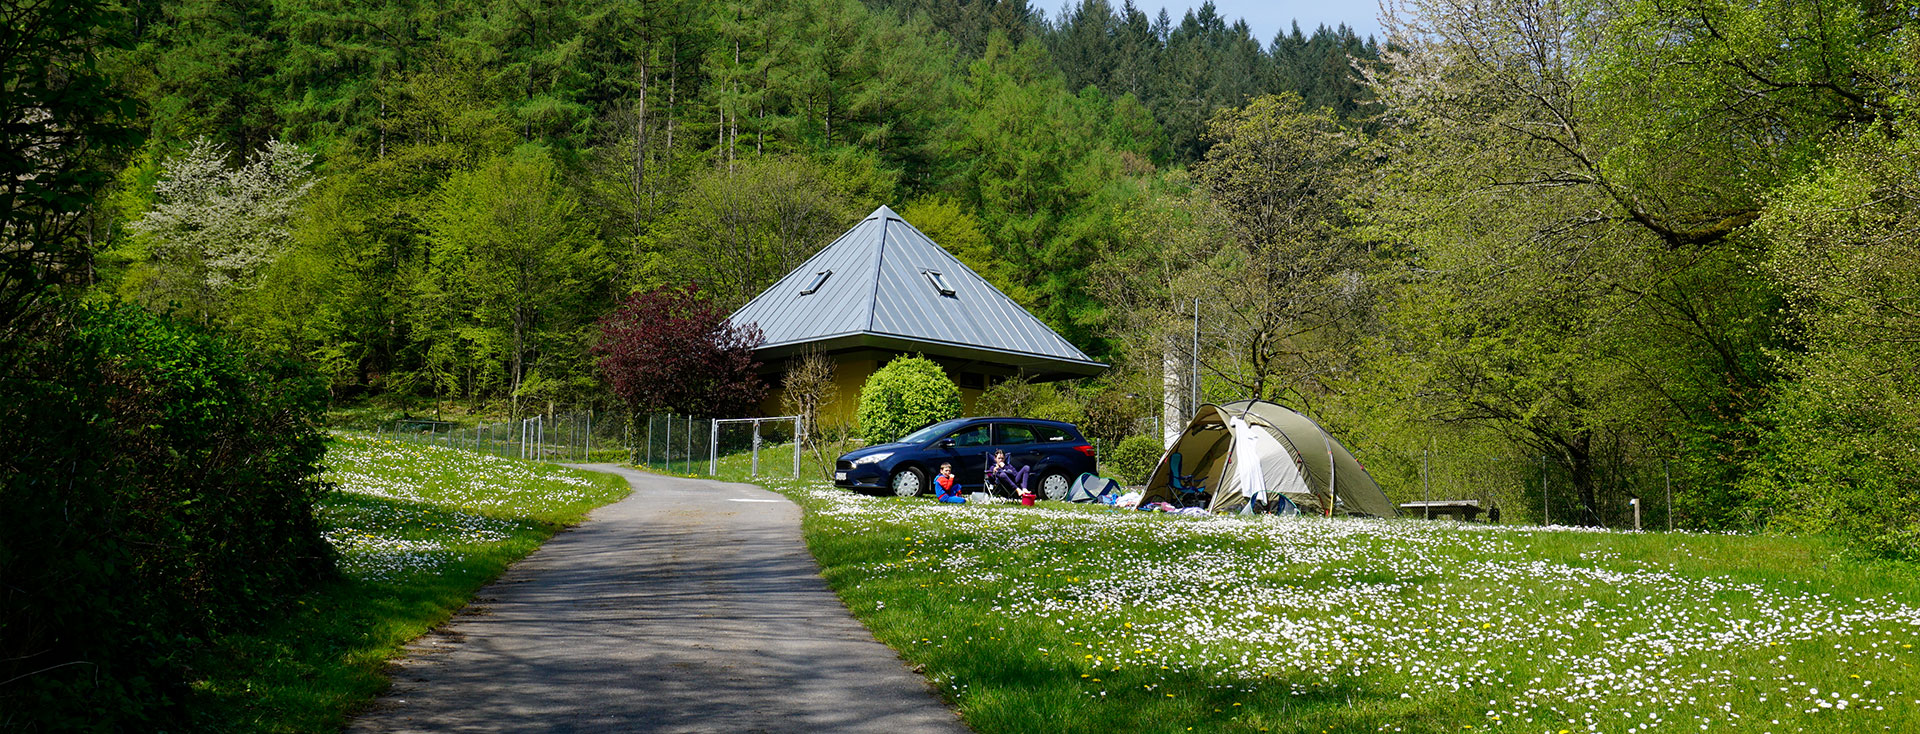 Odenwald-Camping-Park Weg und Zelt